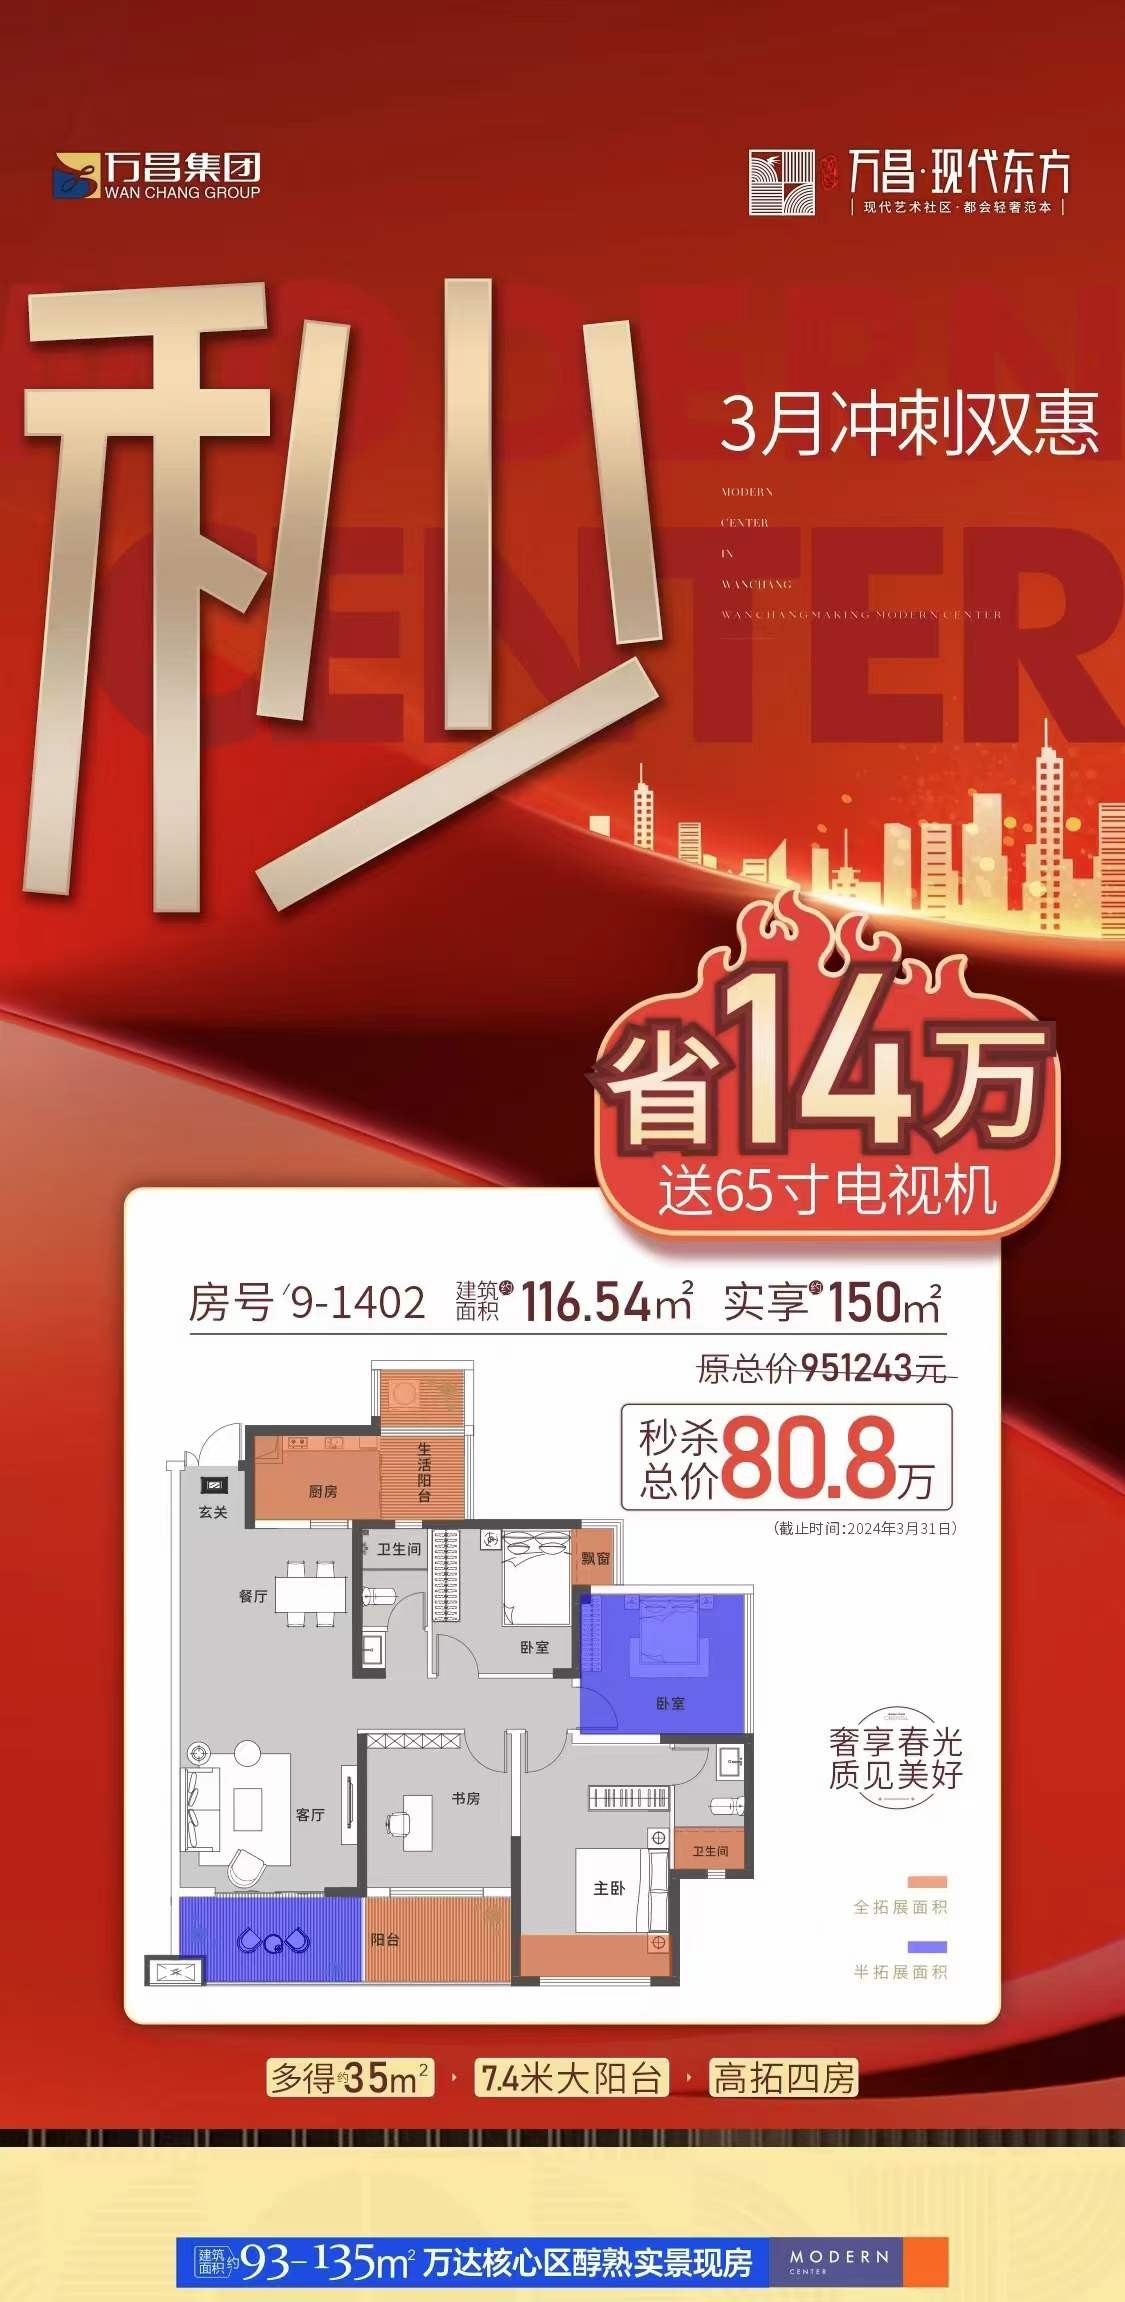 正南向7.4米阳台大四房一口价 力省14万?➕65寸电视机 #万昌·现代东方